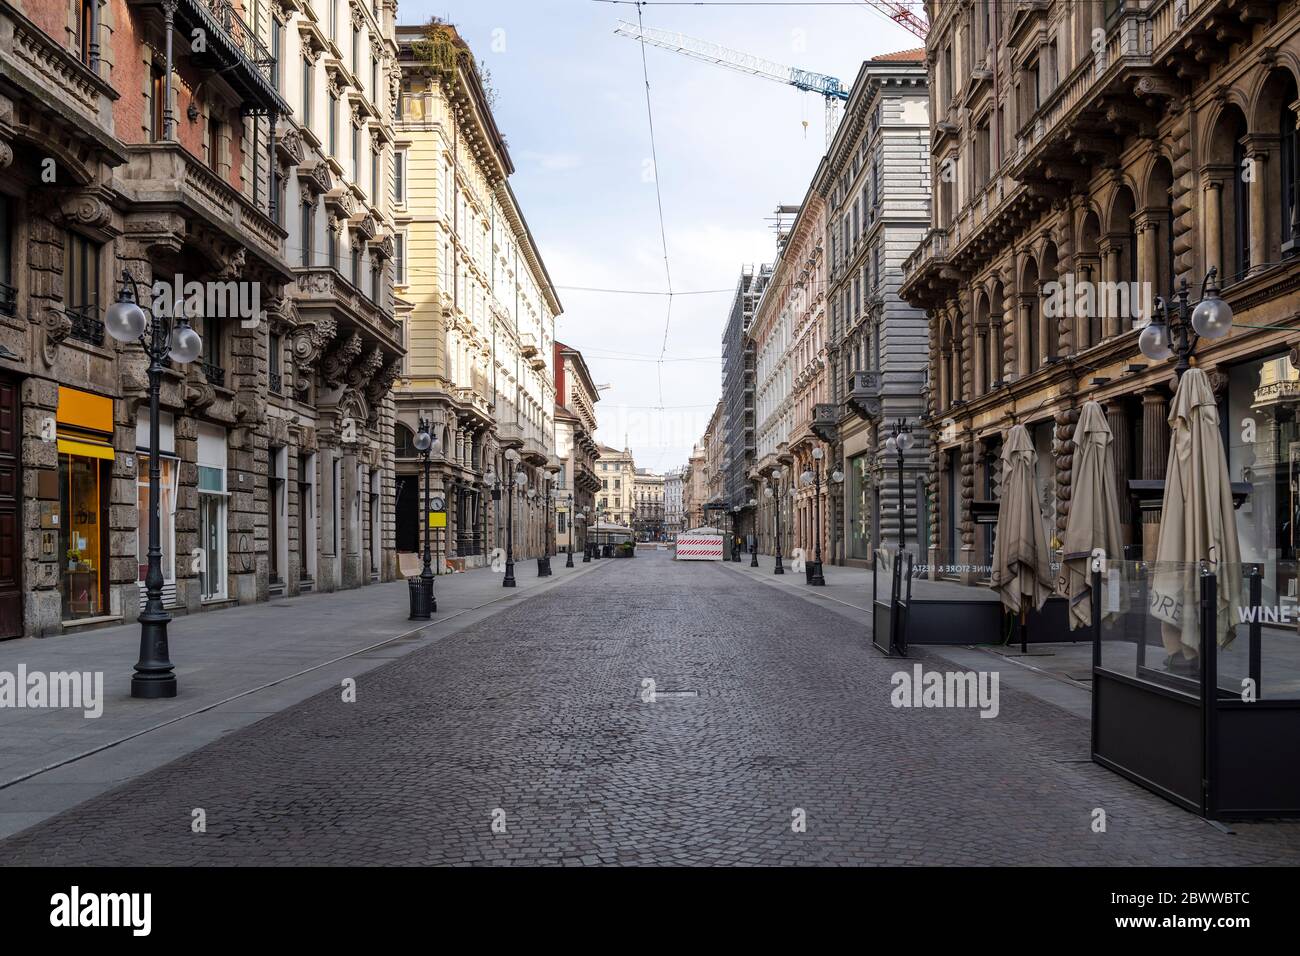 Italien, Mailand, Piazza Cordusio während des COVID-19 Ausbruchs Stockfoto